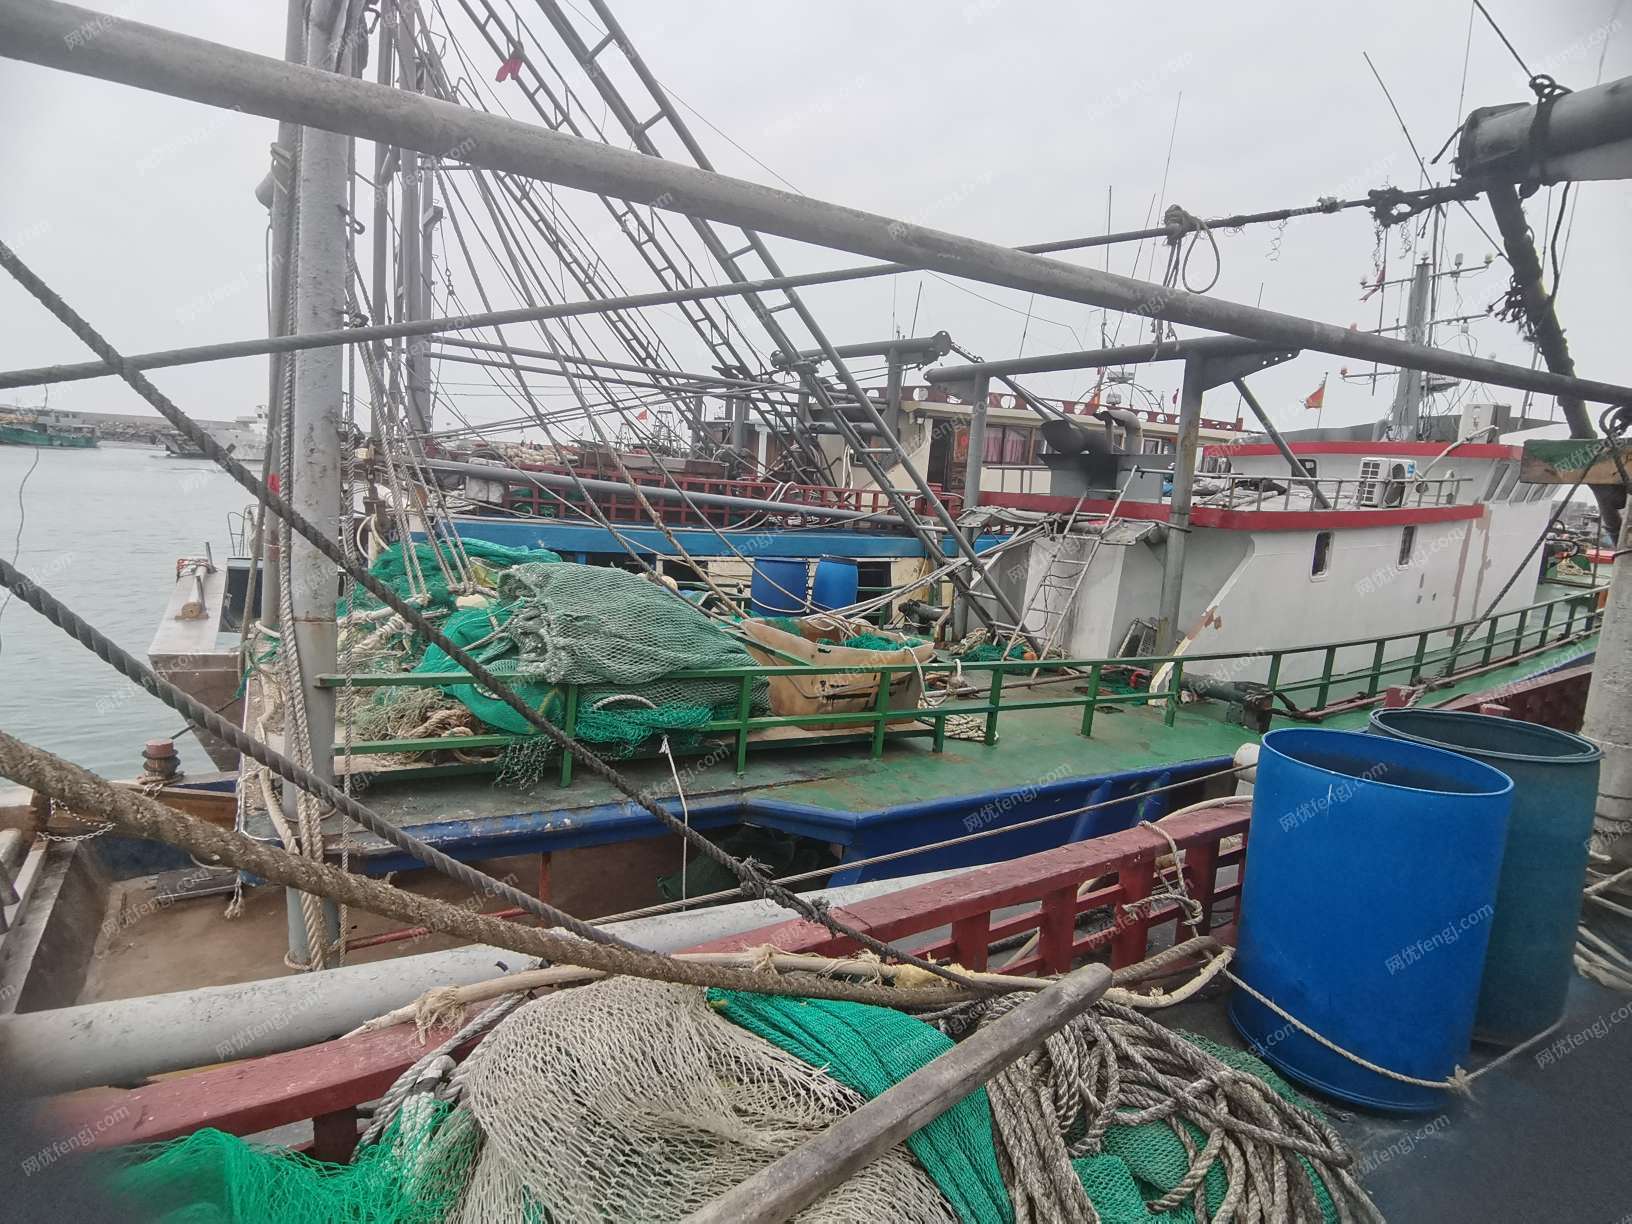 出售二手拖网渔船28米